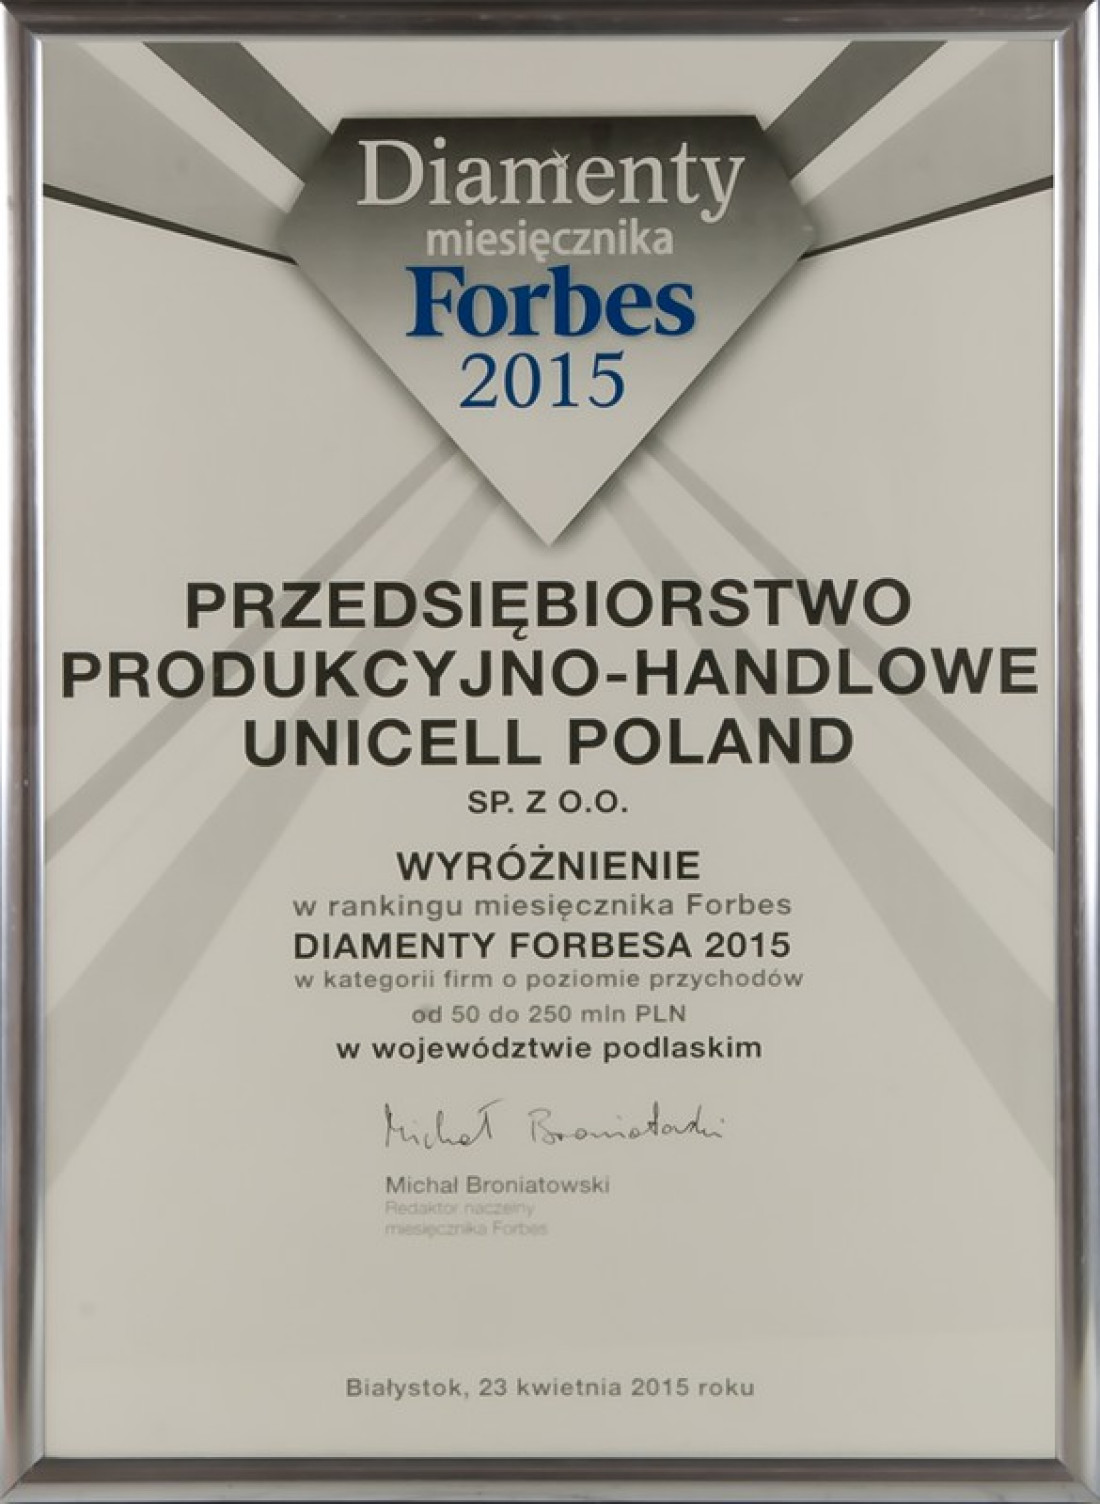 Unicell Poland wyróżniony tytułem Diamenty Forbesa!